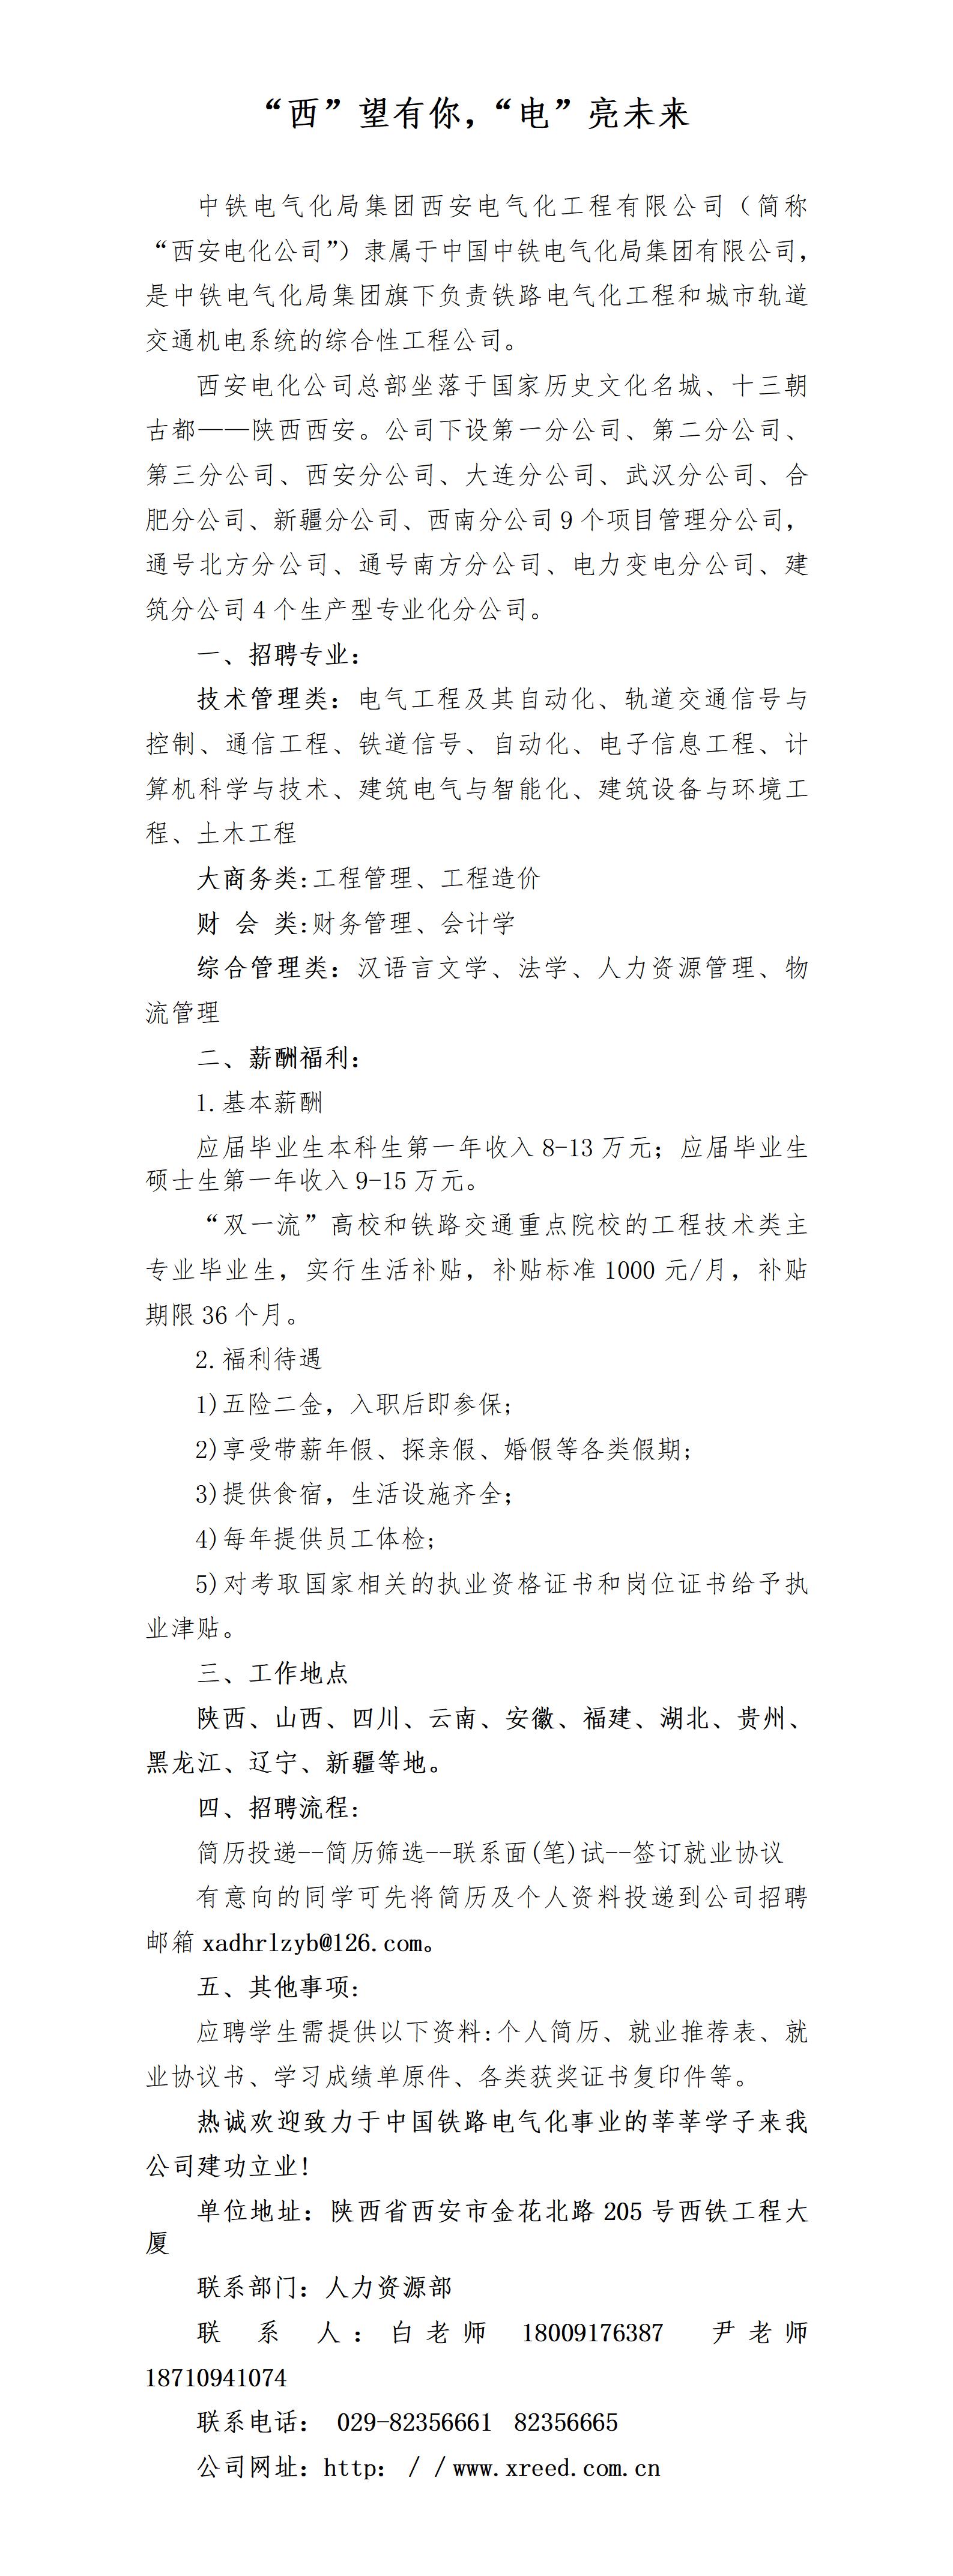 中铁电气化局集团西安电化公司2024年招聘简章3_01.jpg